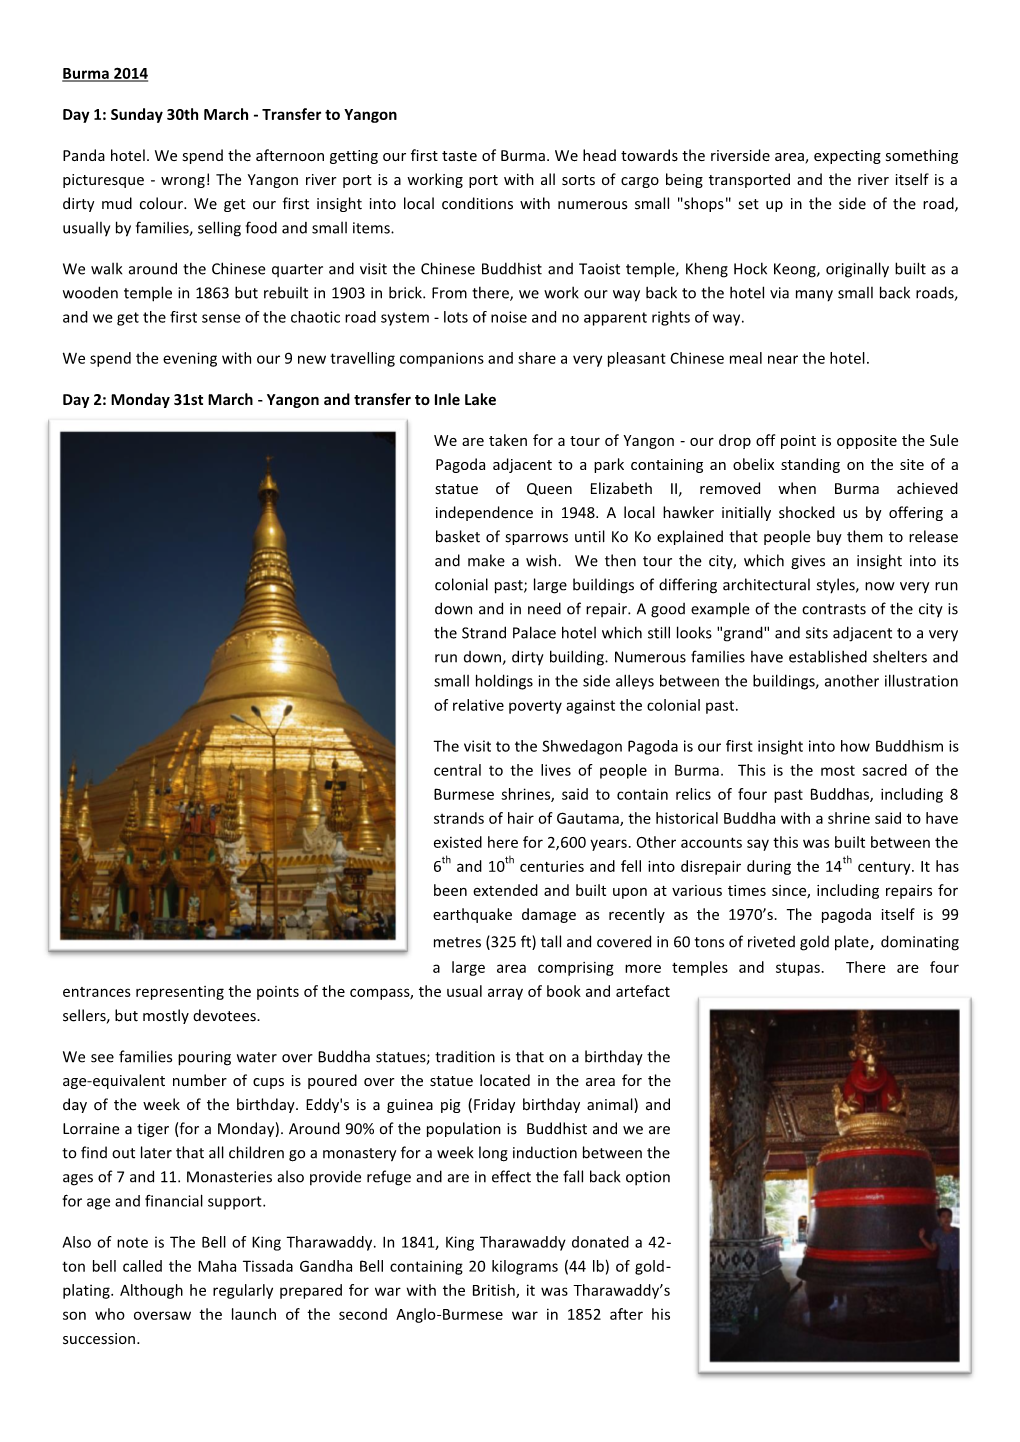 Burma 2014 Day 1